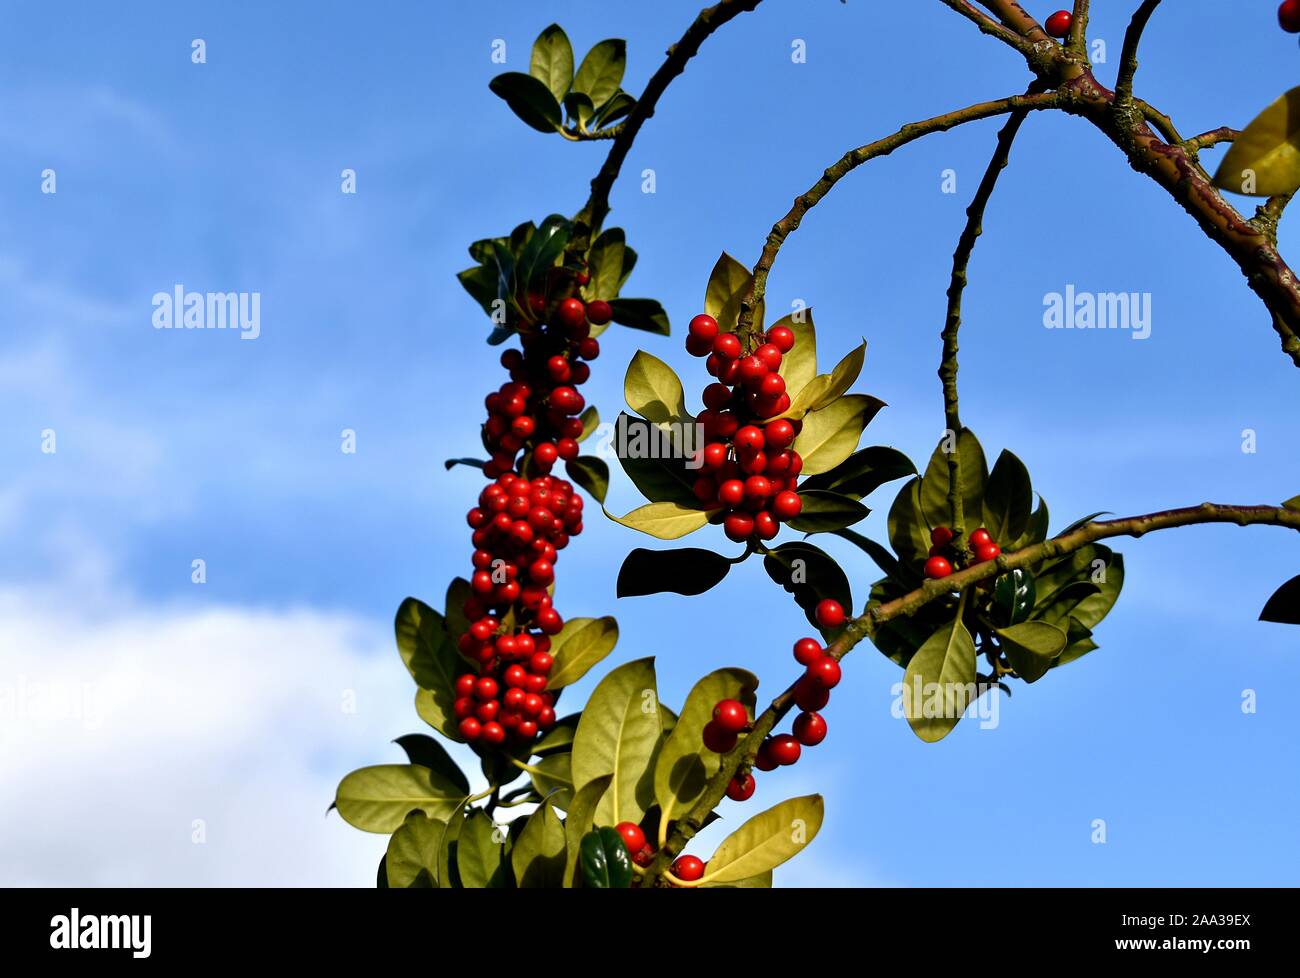 Red berries on the Rhamnus Alaternus tree. Stock Photo